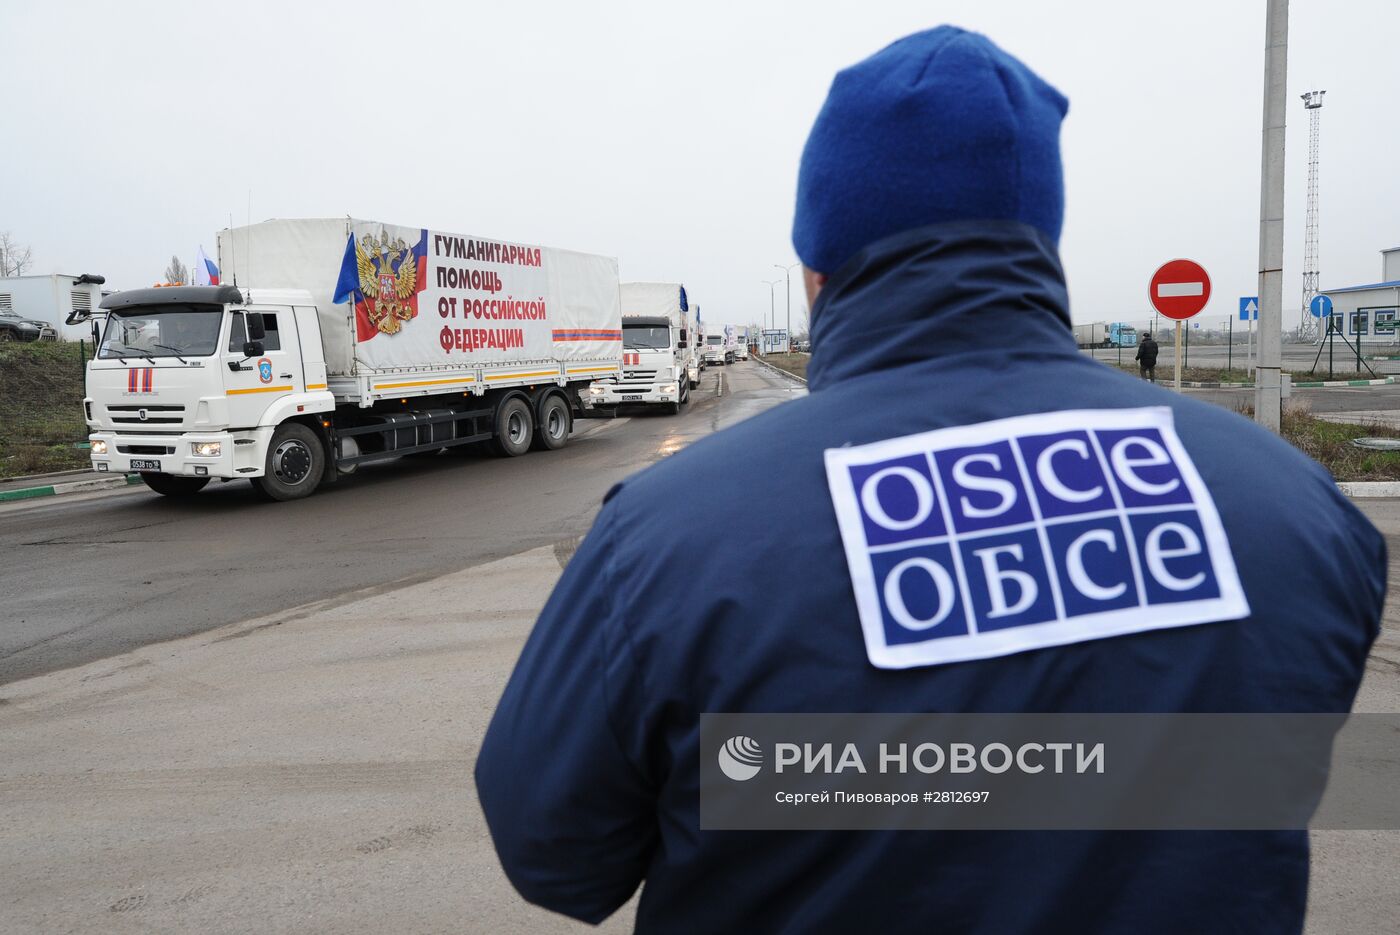 50-й конвой с гуманитарной помощью для Донбасса